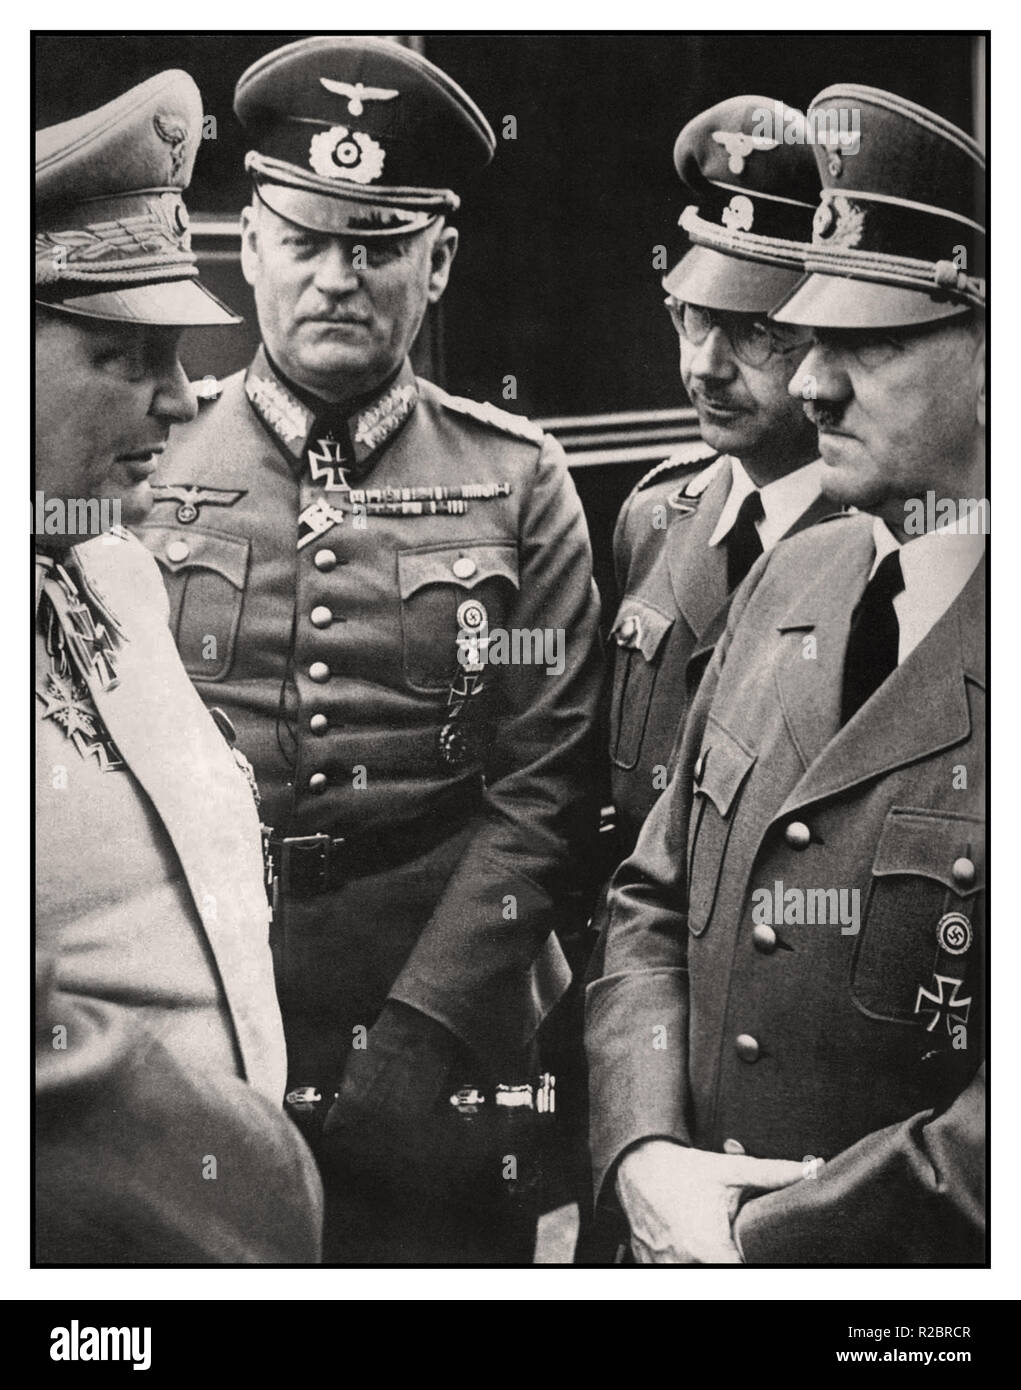 Deutsche Oberkommando Nazi's, Wilhelm Keitel, Hermann Göring, Heinrich Himmler und Adolf Hitler, alle in Uniform anlässlich Hitlers Geburtstag 20 April 1941 Keitel für Kriegsverbrechen, die restlichen drei entging Ausführung durch Selbstmord ausgeführt wurde.. Stockfoto